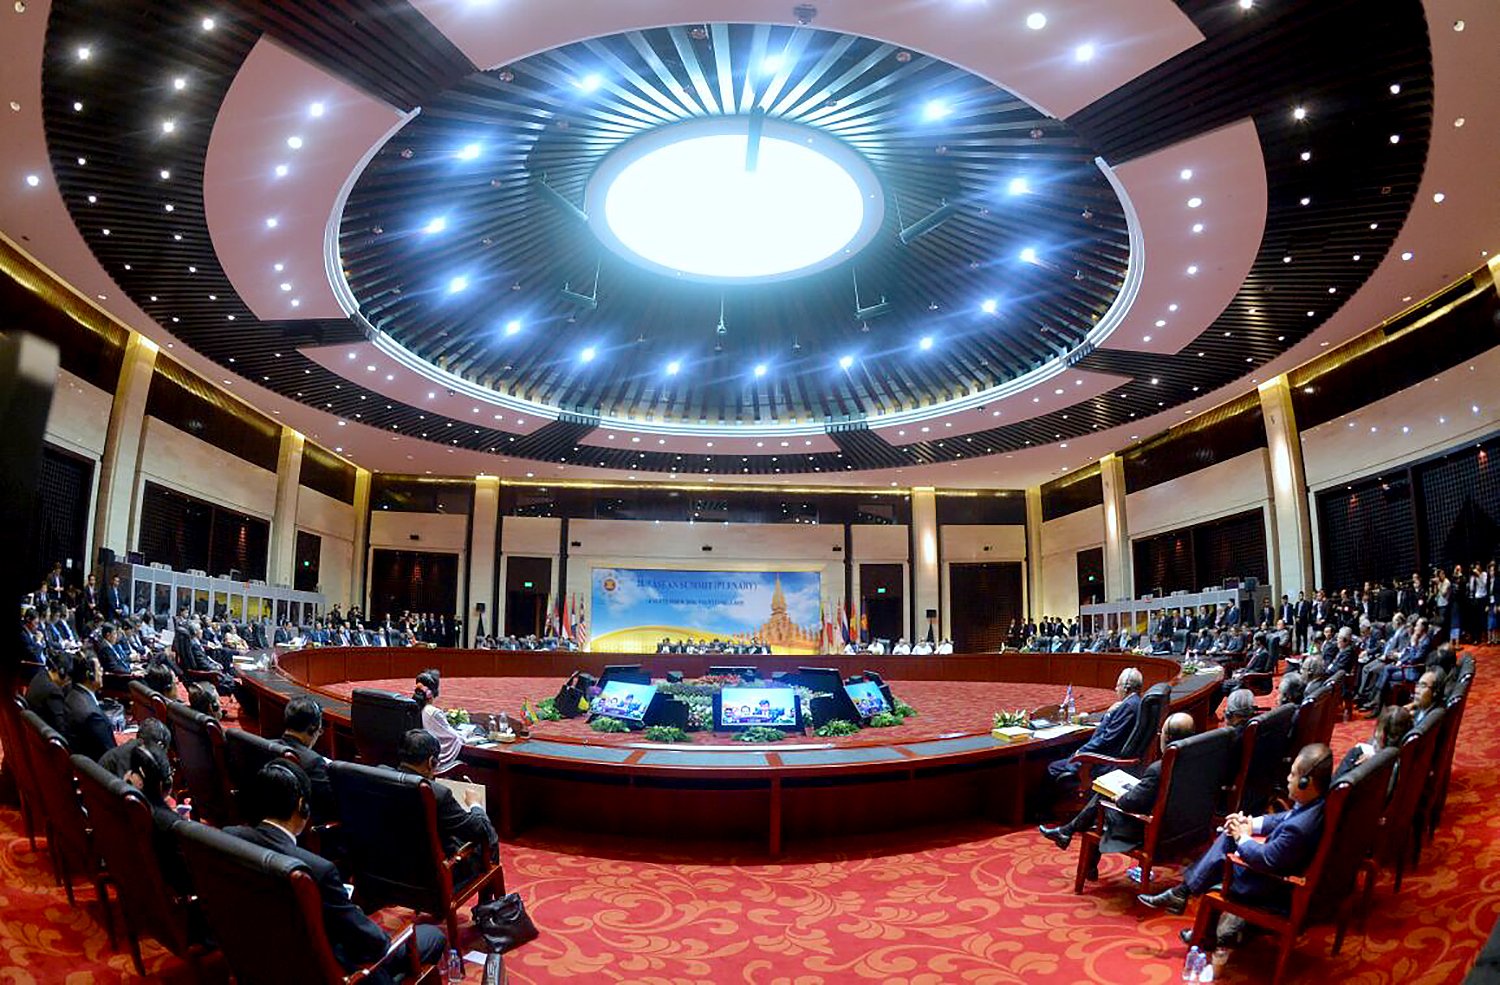 ASEAN Summit ke-28 akan membahas pembangunan komunitas ASEAN, khususnya visi ASEAN 2025 dan tiga rencana induk. Sedangkan ASEAN Summit ke-29 bakal membahas tentang hubungan luar negeri dan orientasi ASEAN pada masa depan.